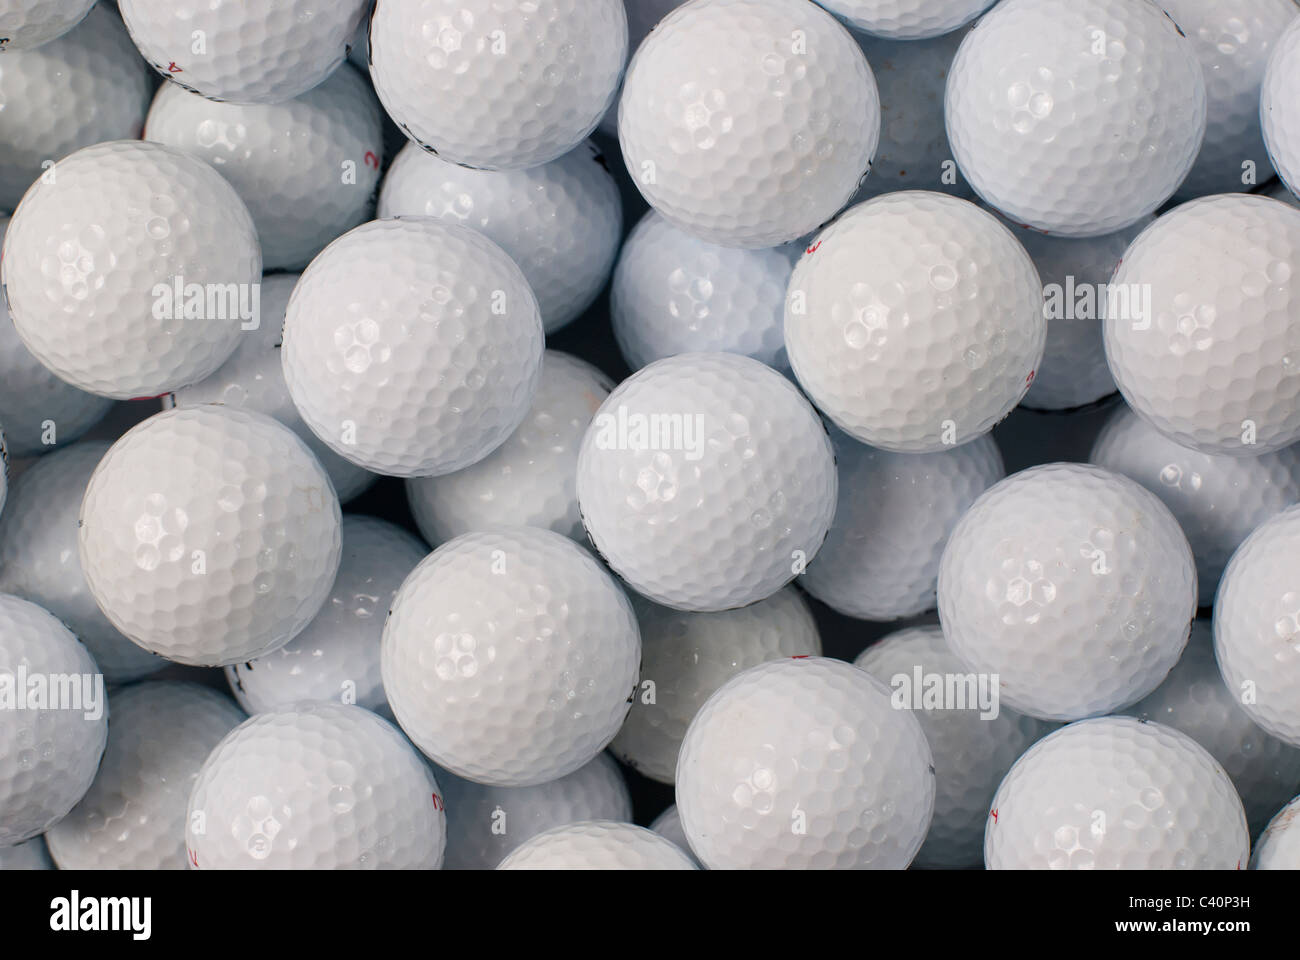 golf balls - no names, logos or brands Stock Photo